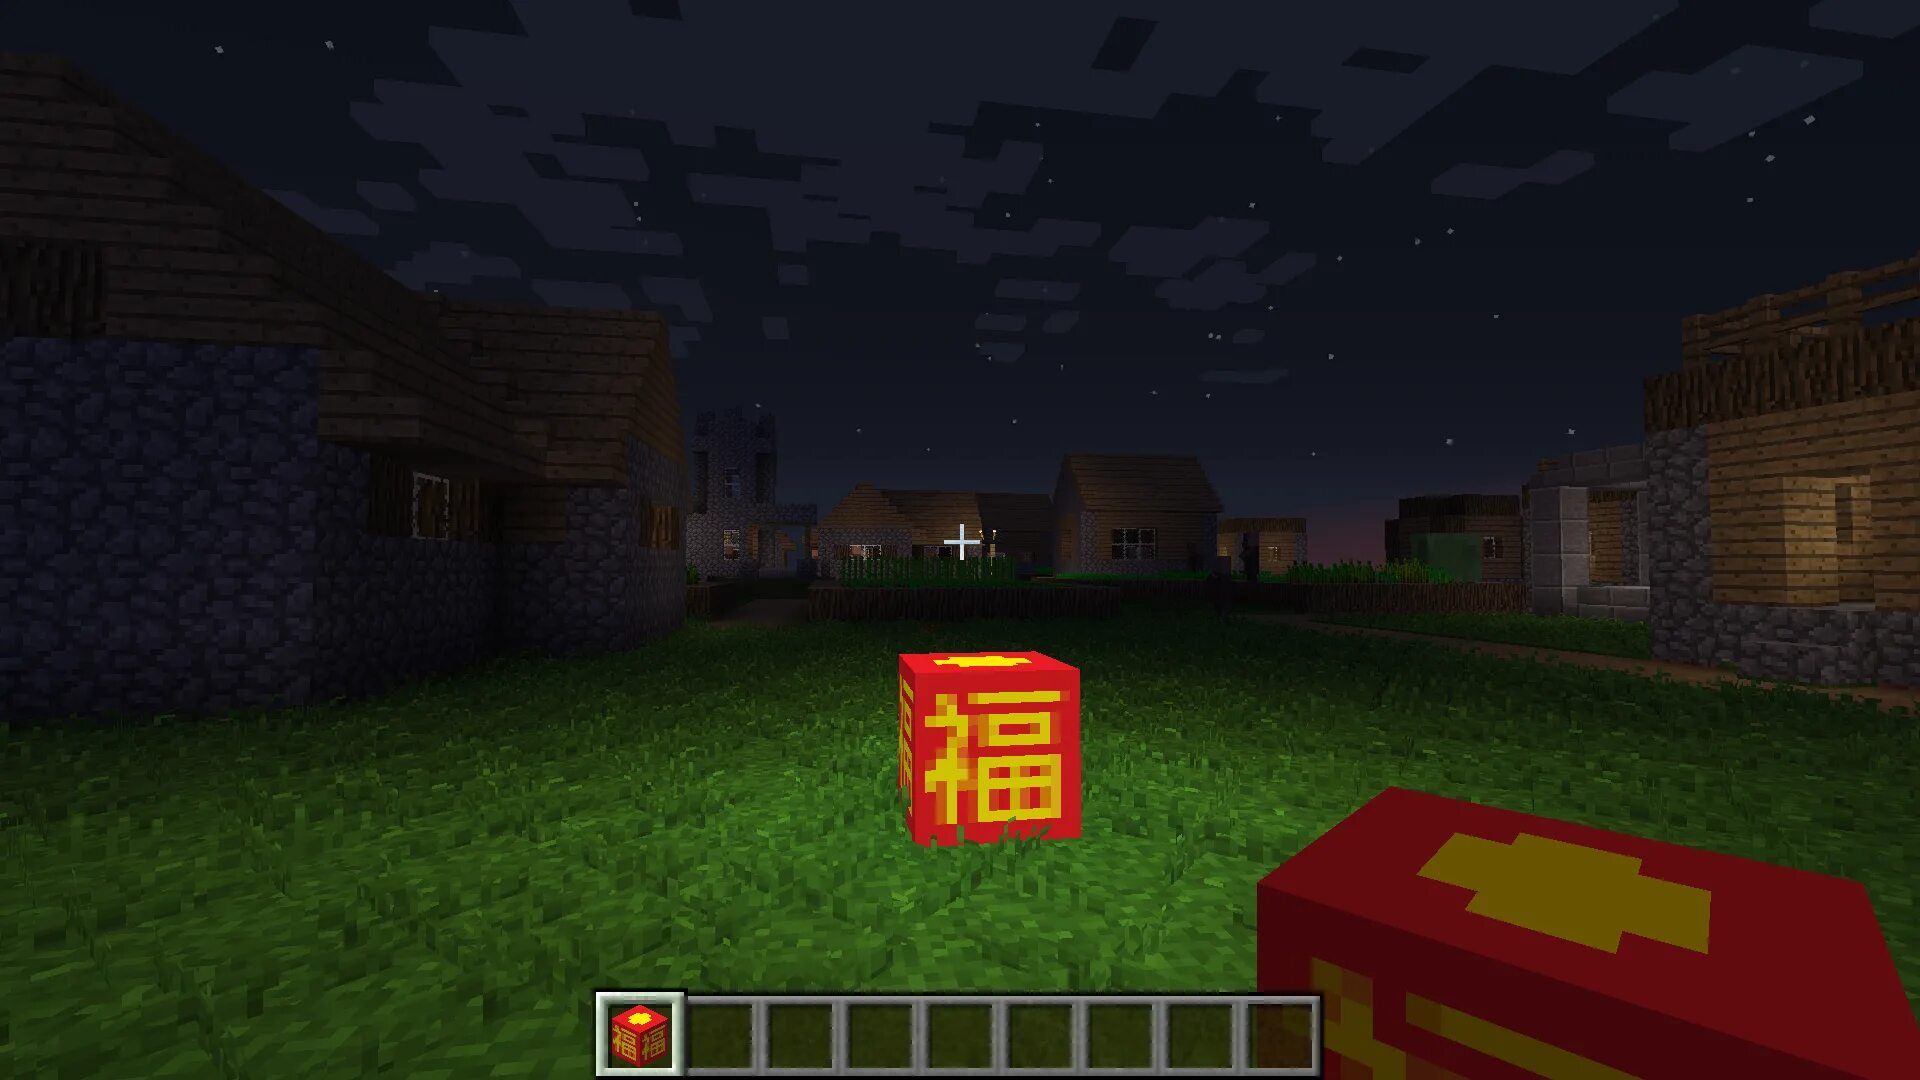 Фонари майнкрафт 1.12.2. Minecraft 1.5.2 Mod китайские фонарики. Фонарь майнкрафт постройка 1.12.2. Фонарики в МАЙНКРАФТЕ.